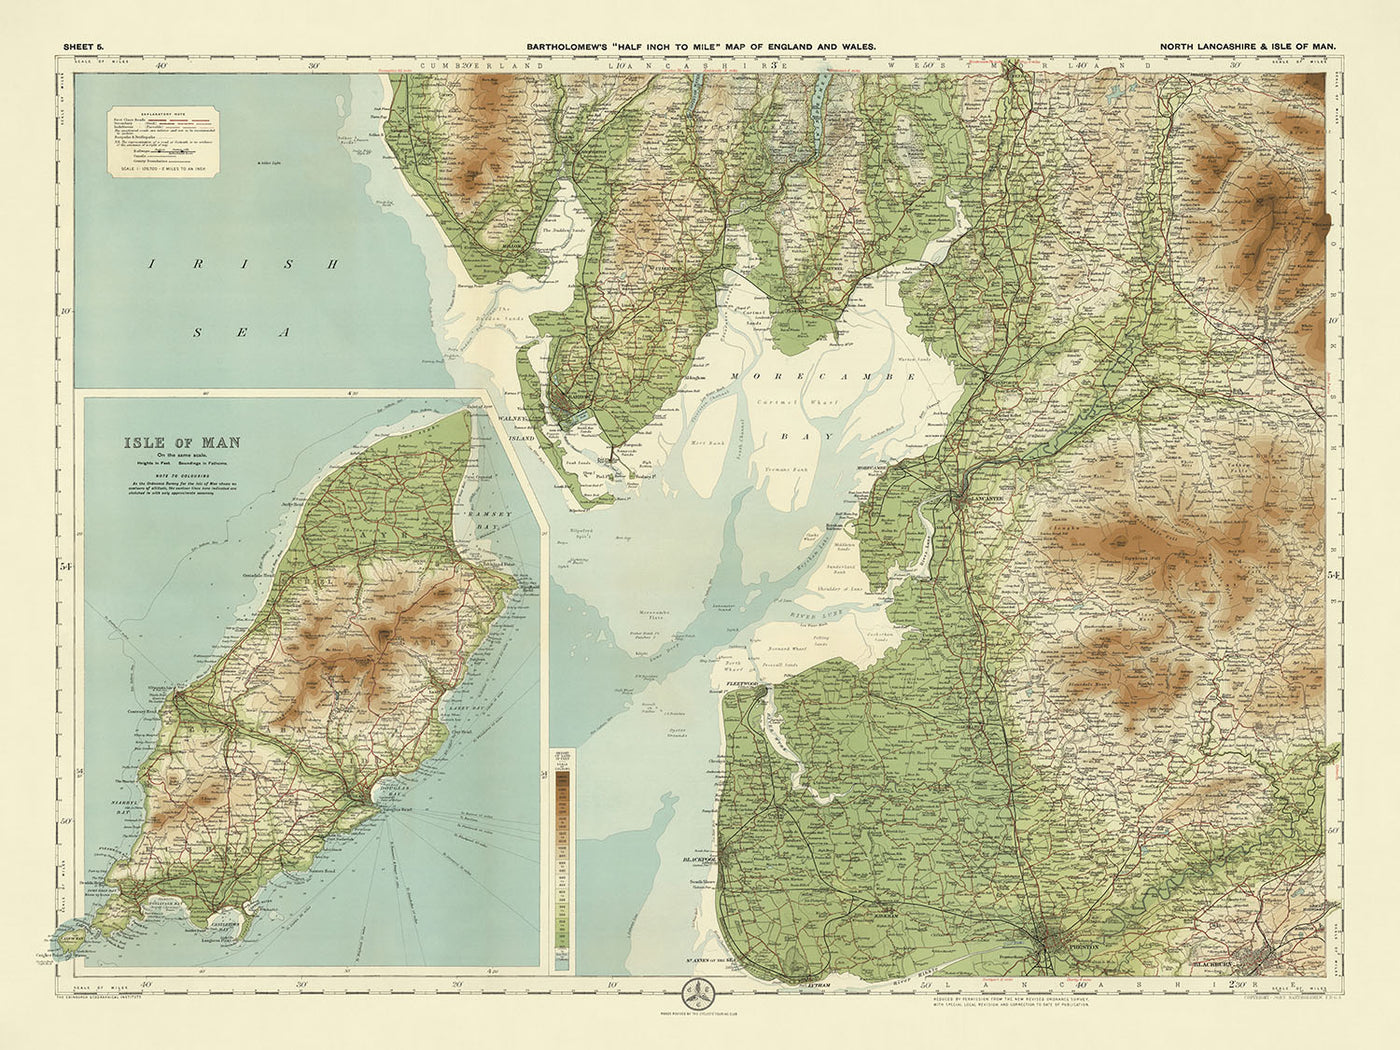 Antiguo mapa OS del norte de Lancashire y la Isla de Man por Bartolomé, 1901: Lancaster, Douglas, Morecambe, Snaefell, Bosque de Bowland, Castillo de Peel